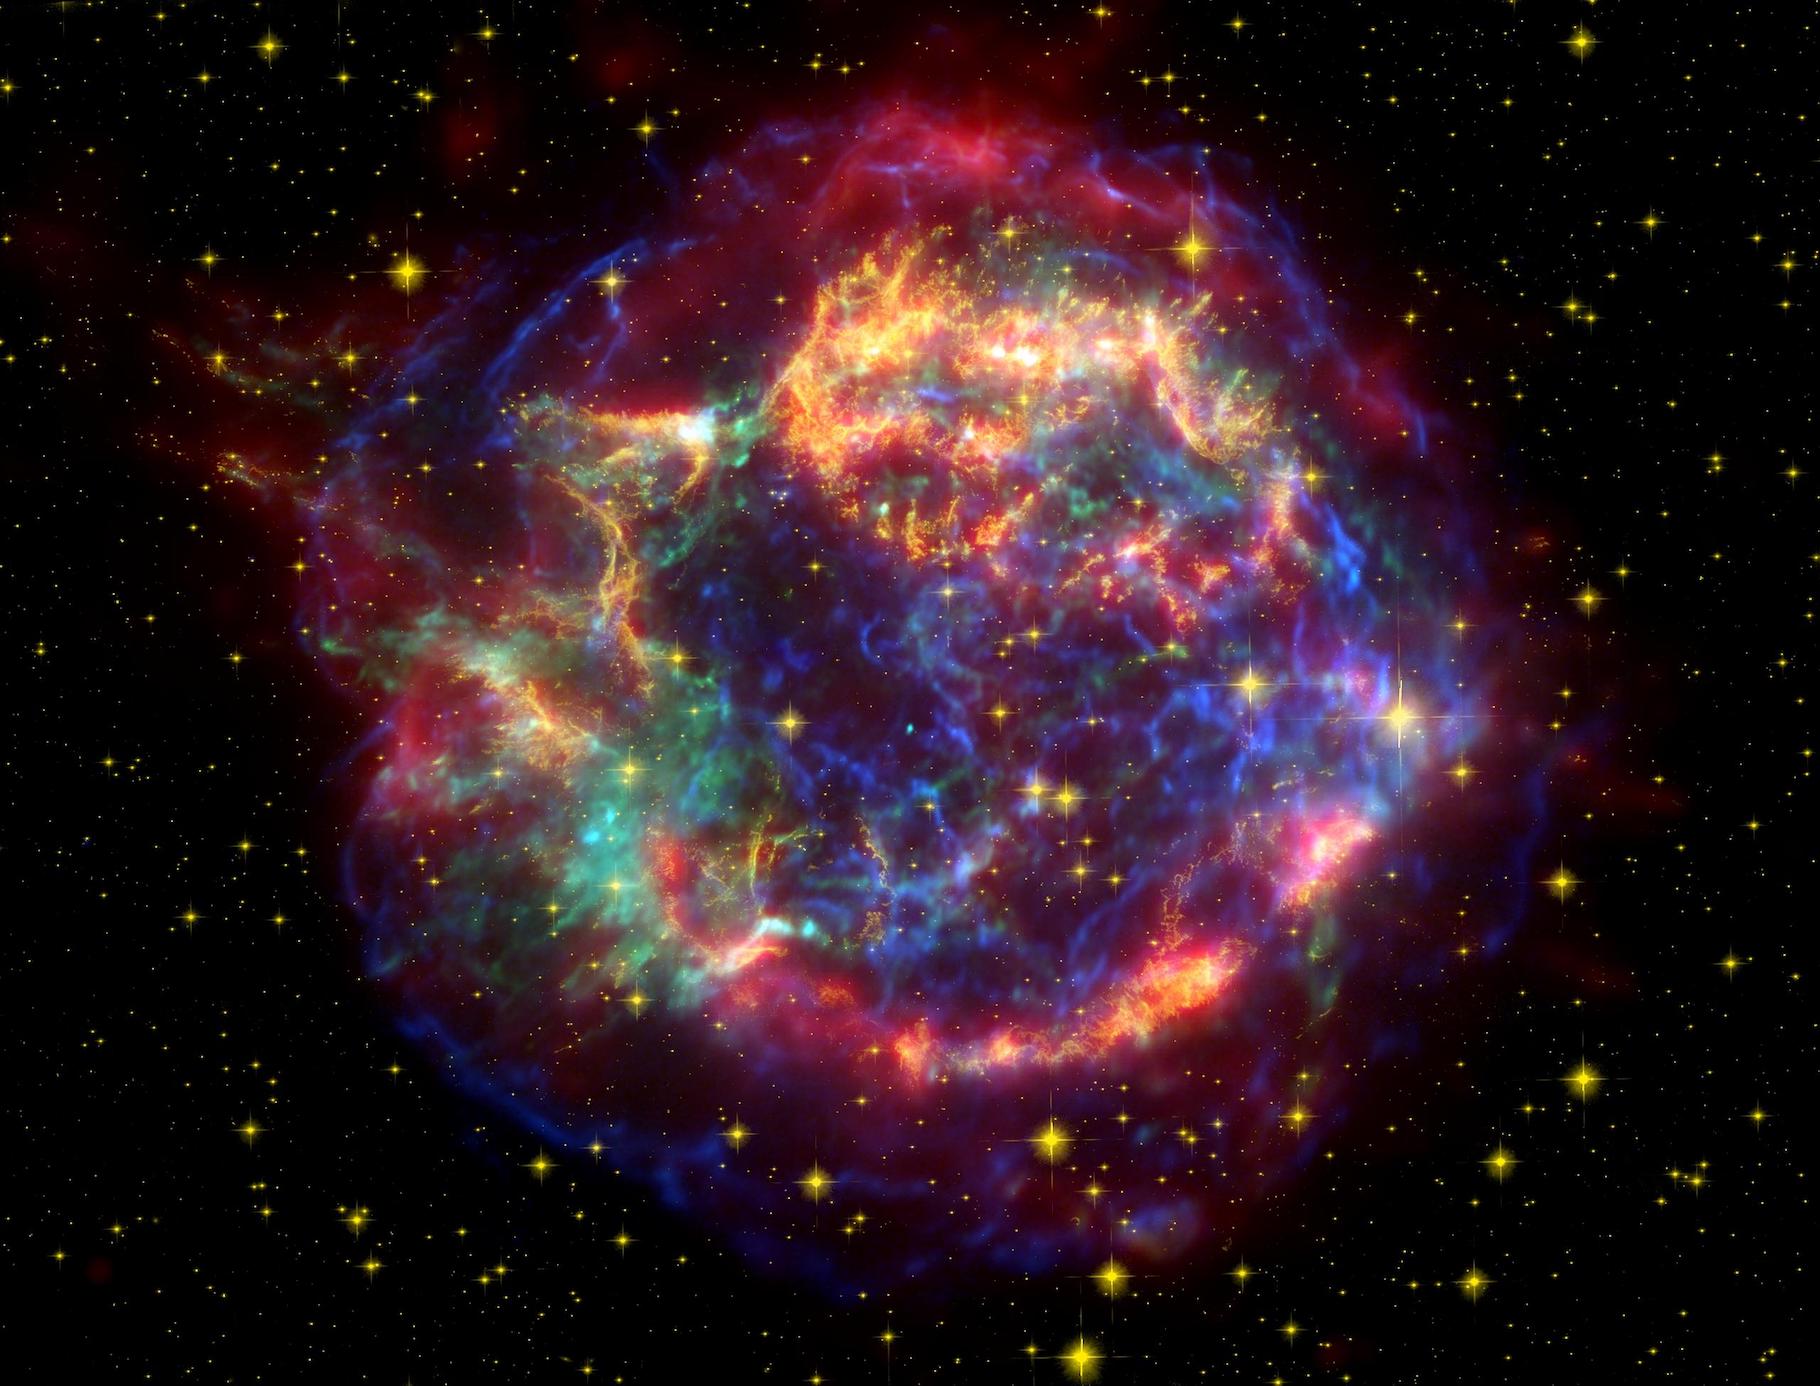 Cassiopée A est le rémanent d’une supernova dont l’explosion a été observable sur Terre il y a environ 300 ans. De telles explosions de supernovæ façonnent littéralement le milieu interstellaire. Et lorsque notre Planète traverse leurs rémanents, elle peut en capter certains éléments comme le fer 60. © Télescope spatial Spitzer, Wikipedia, Domaine public